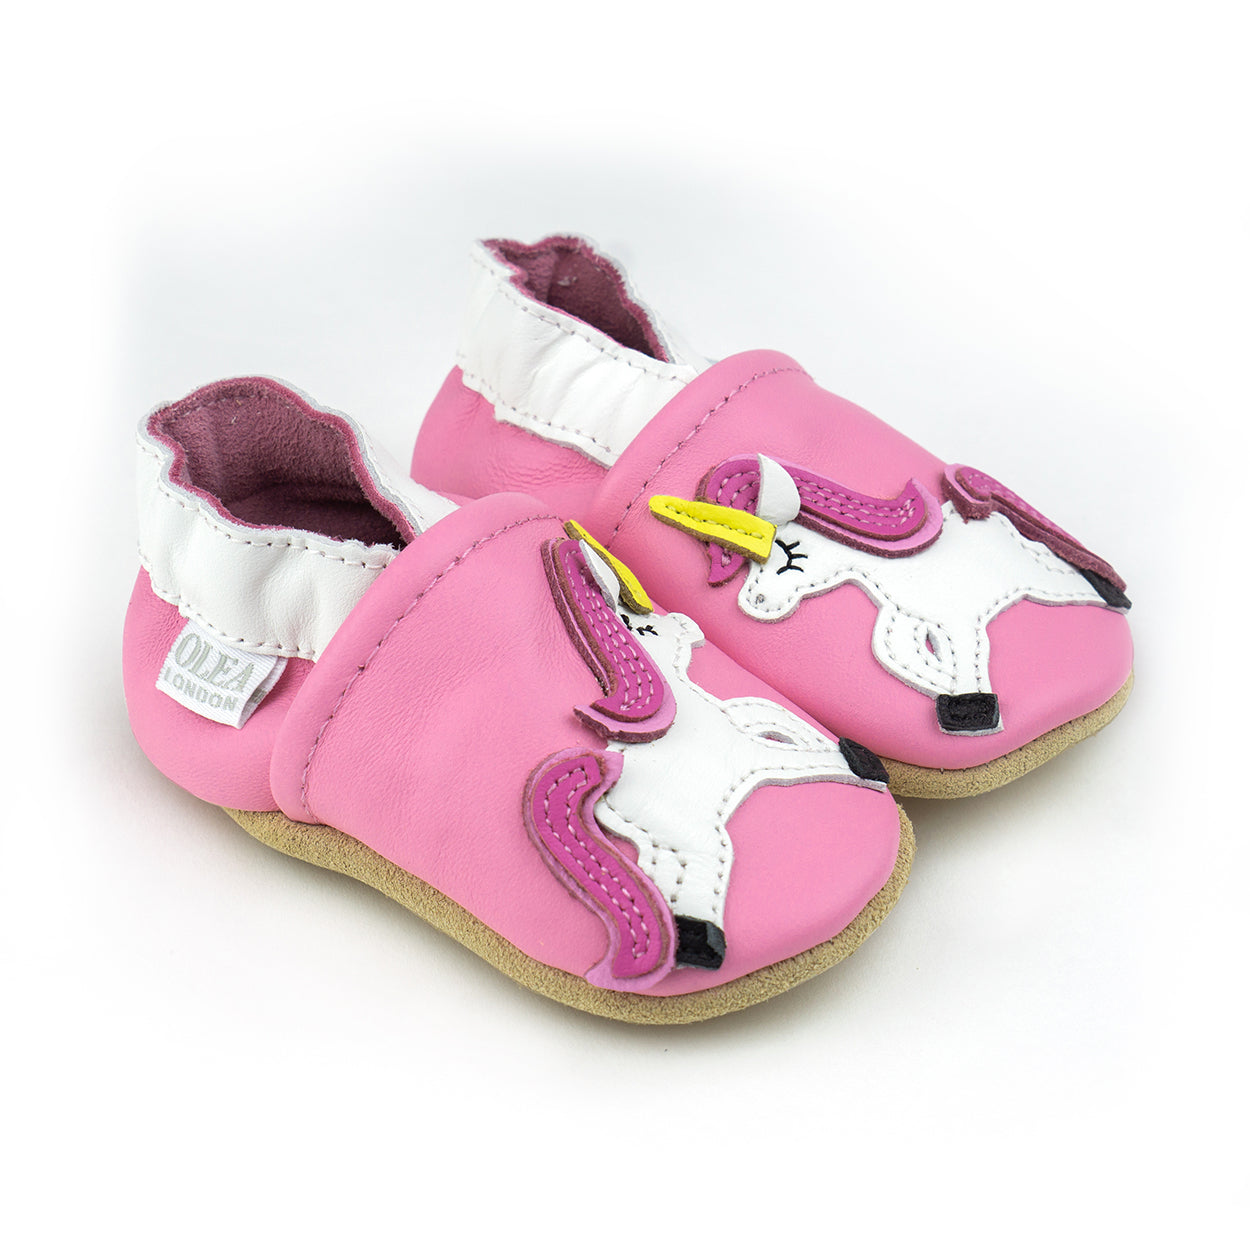 Soft Leather Baby Shoes Unicorn